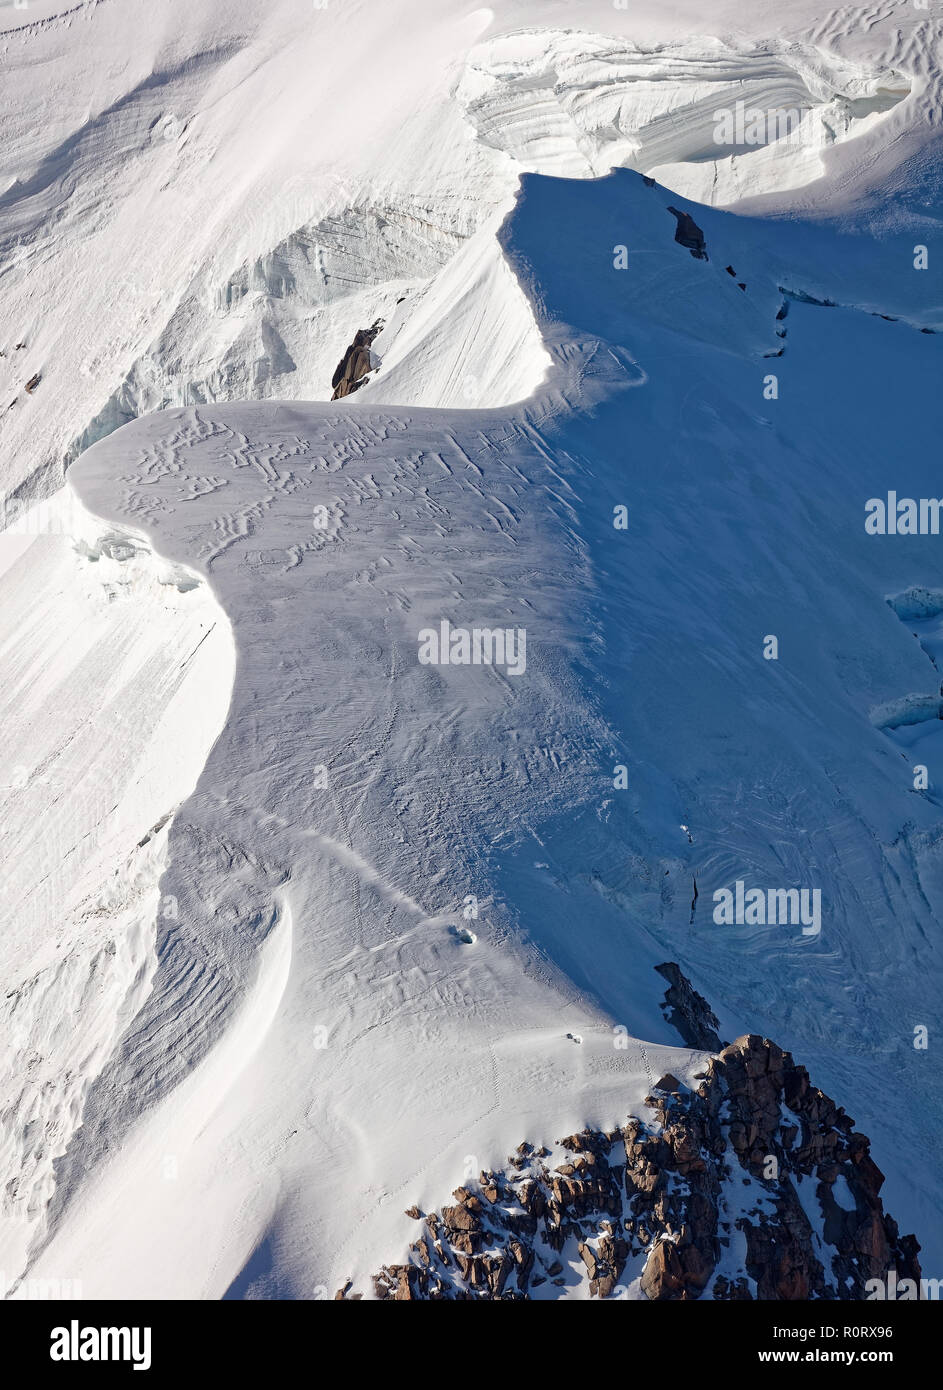 Pointe Lachenal, Chamonix sud-est della Francia, Auvergne-Rhône-Alpes. Cumuli di neve artistica creata dalla potenza del vento a nord di sperone di Pointe Lachenal. Foto Stock